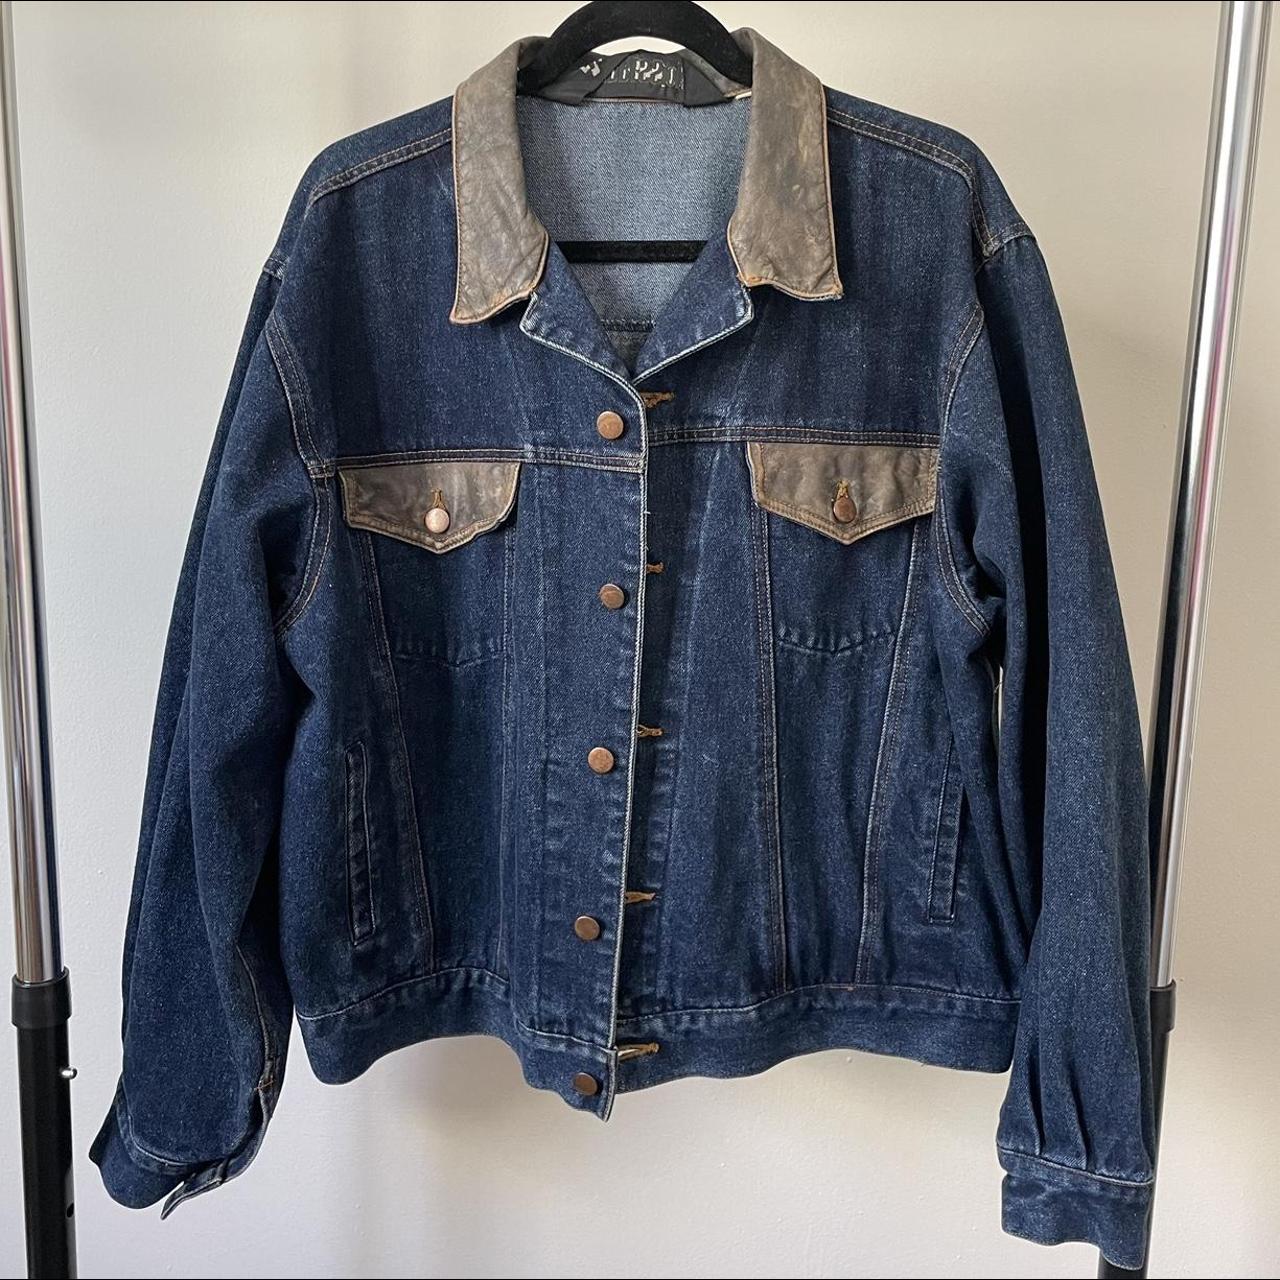 Vintage 80s denim and leather jacket. Size:... - Depop